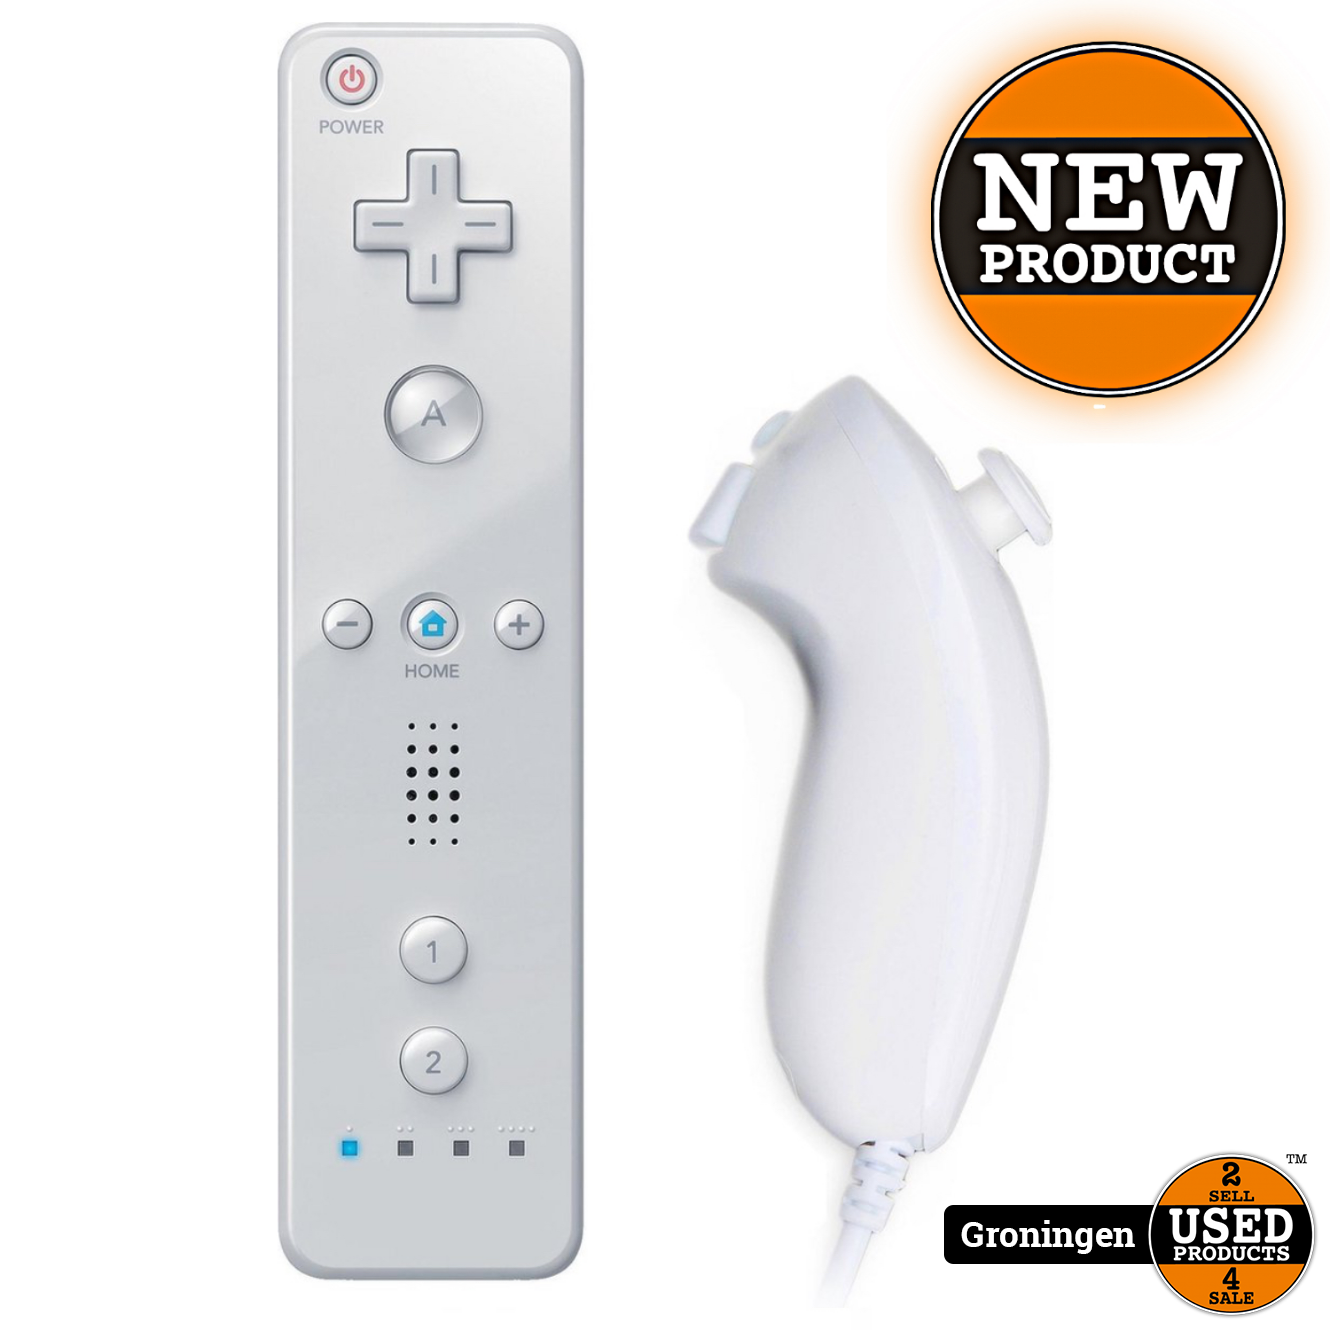 Verschrikkelijk Pionier Zegevieren Nintendo Wii Wii Controller en Nunchuk voor & Wii U - Wit | NIEUW - Used  Products Groningen